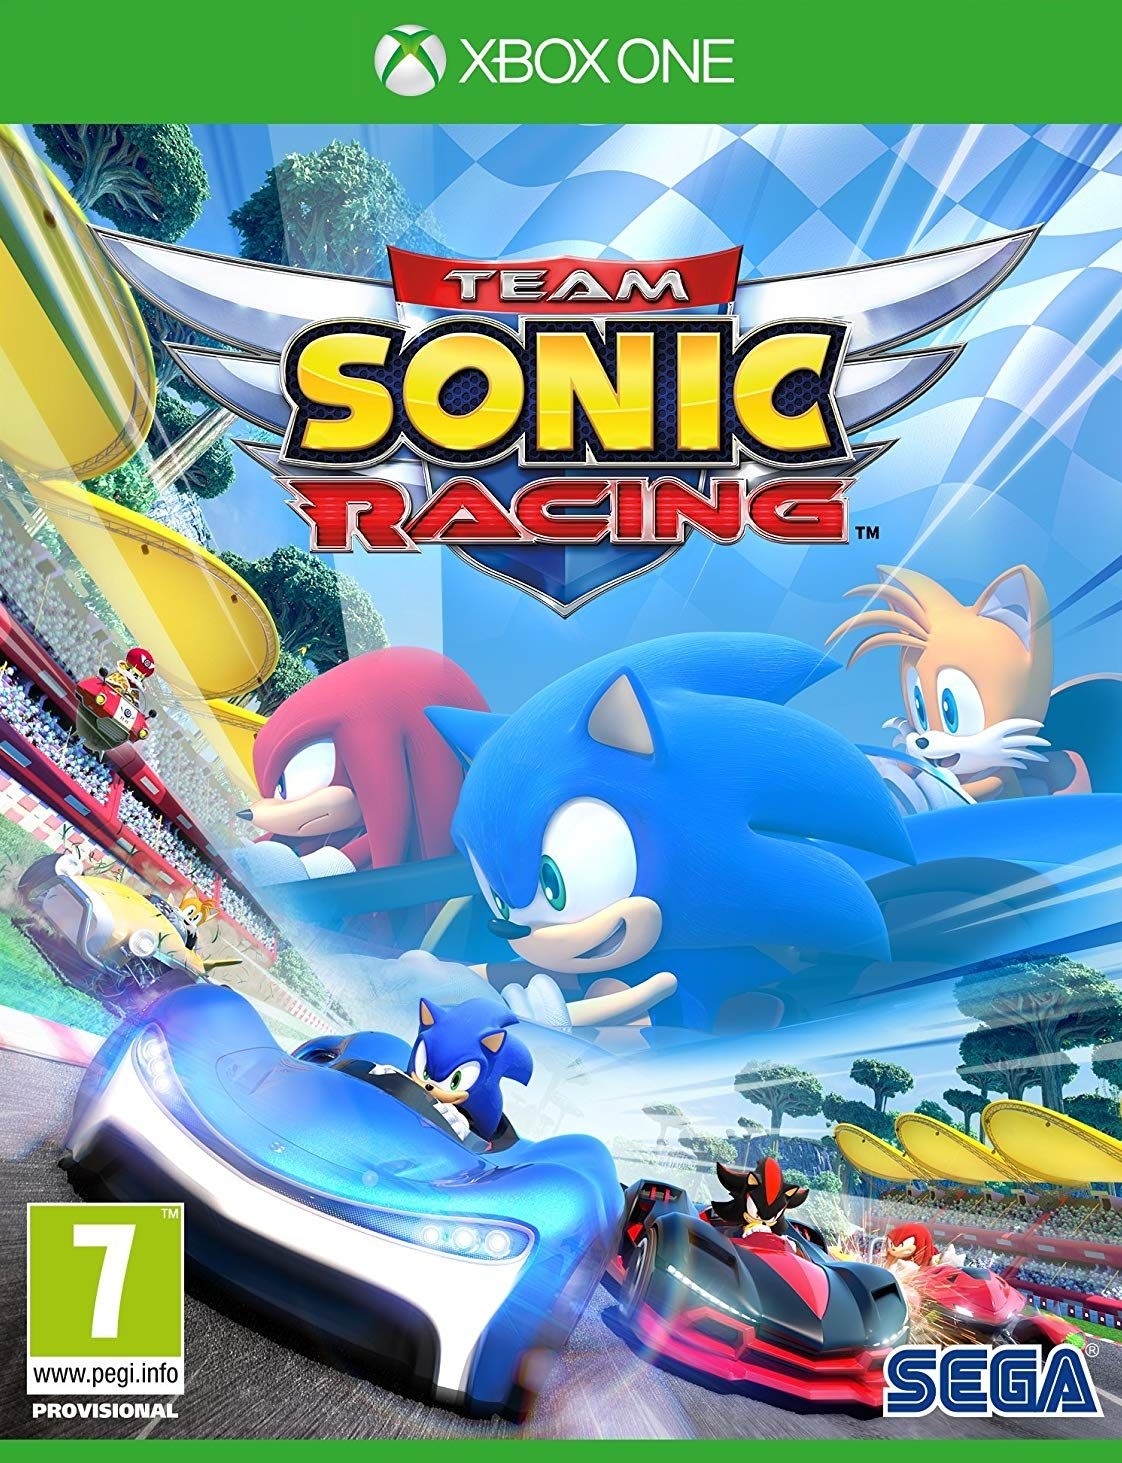 XBOXOne Team Sonic Racing